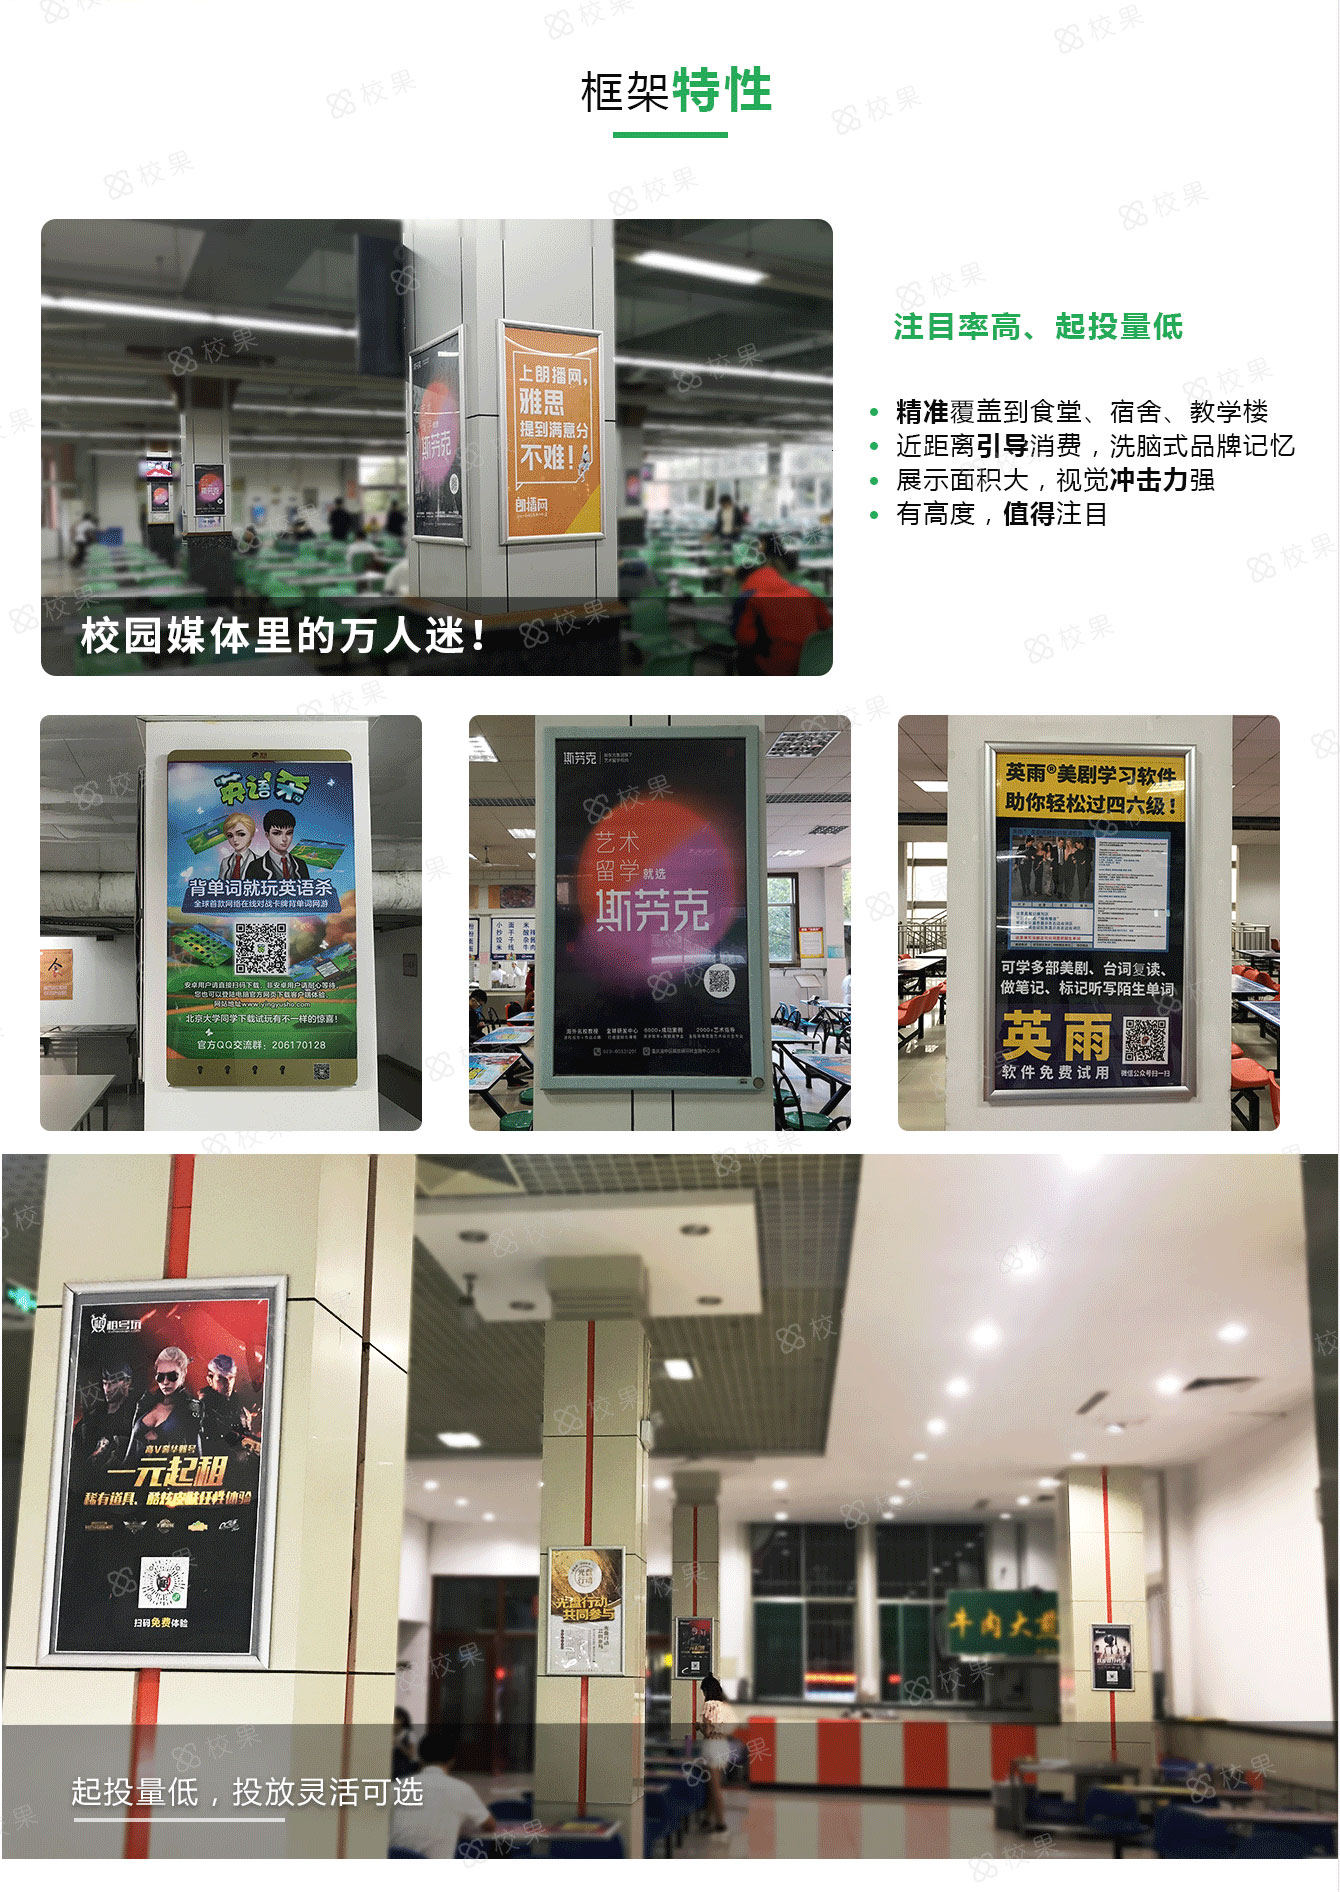 重庆高校框架广告特征